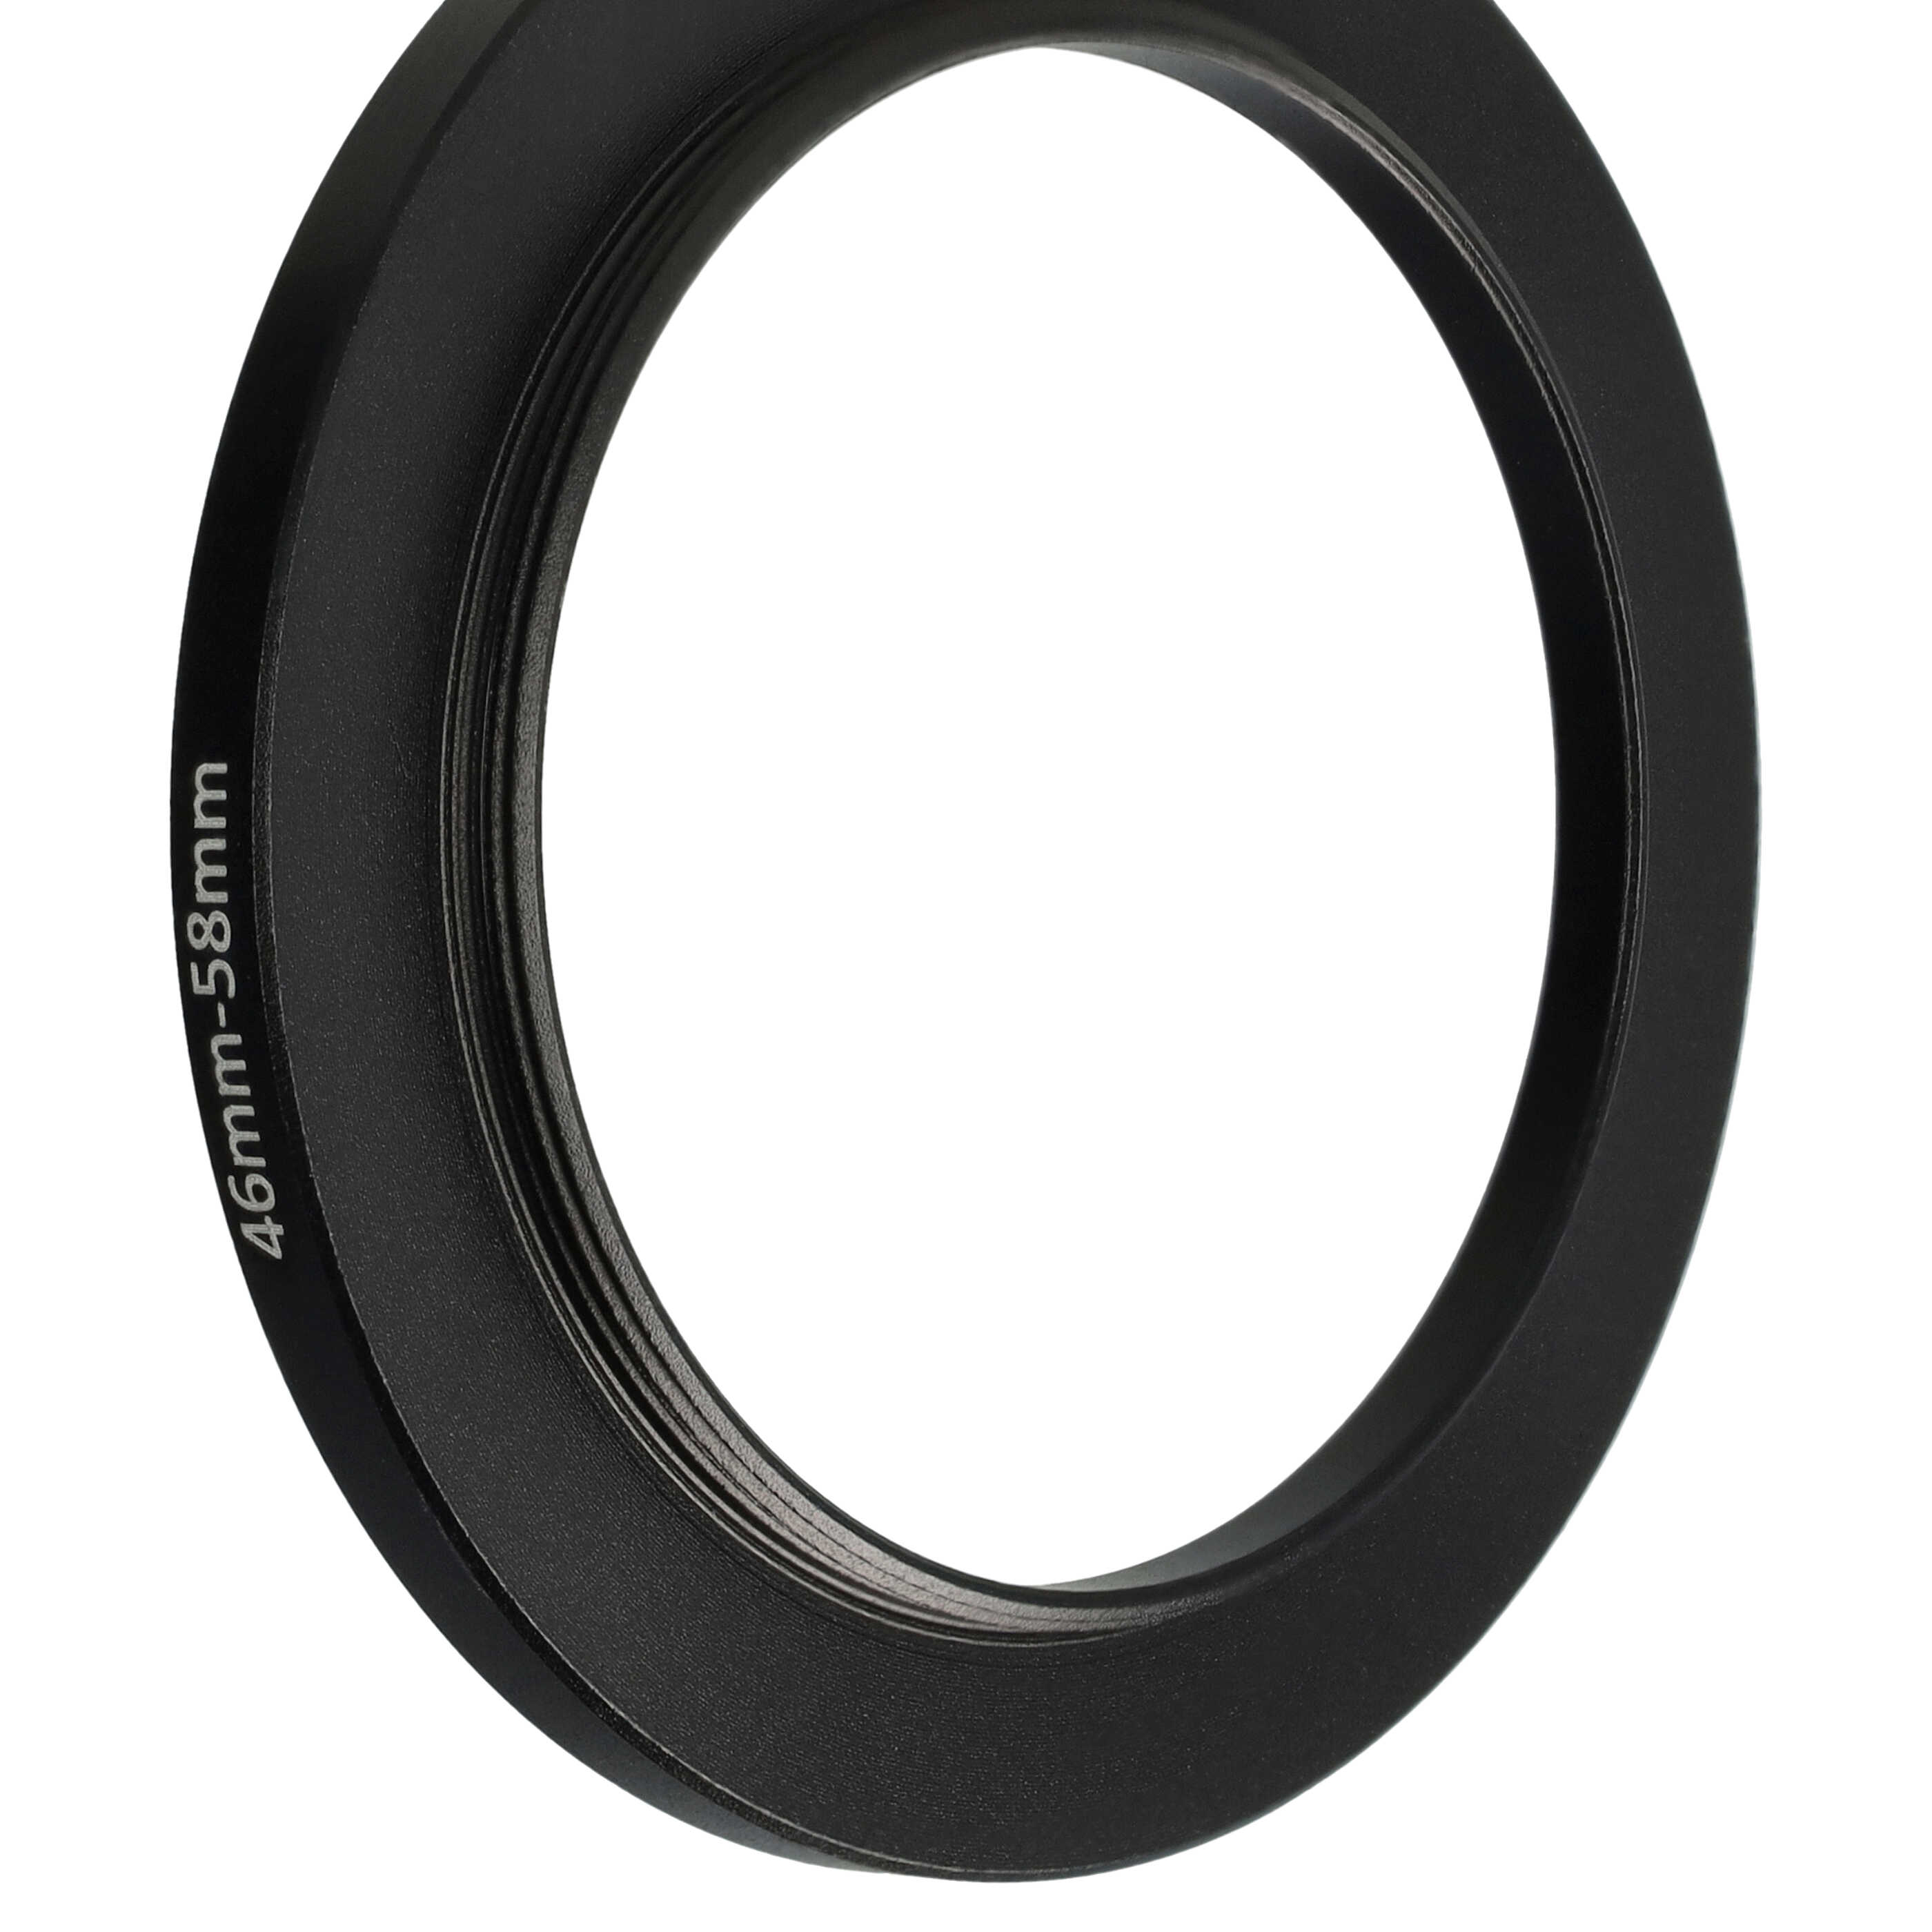 Step-Up-Ring Adapter 46 mm auf 58 mm passend für diverse Kamera-Objektive - Filteradapter